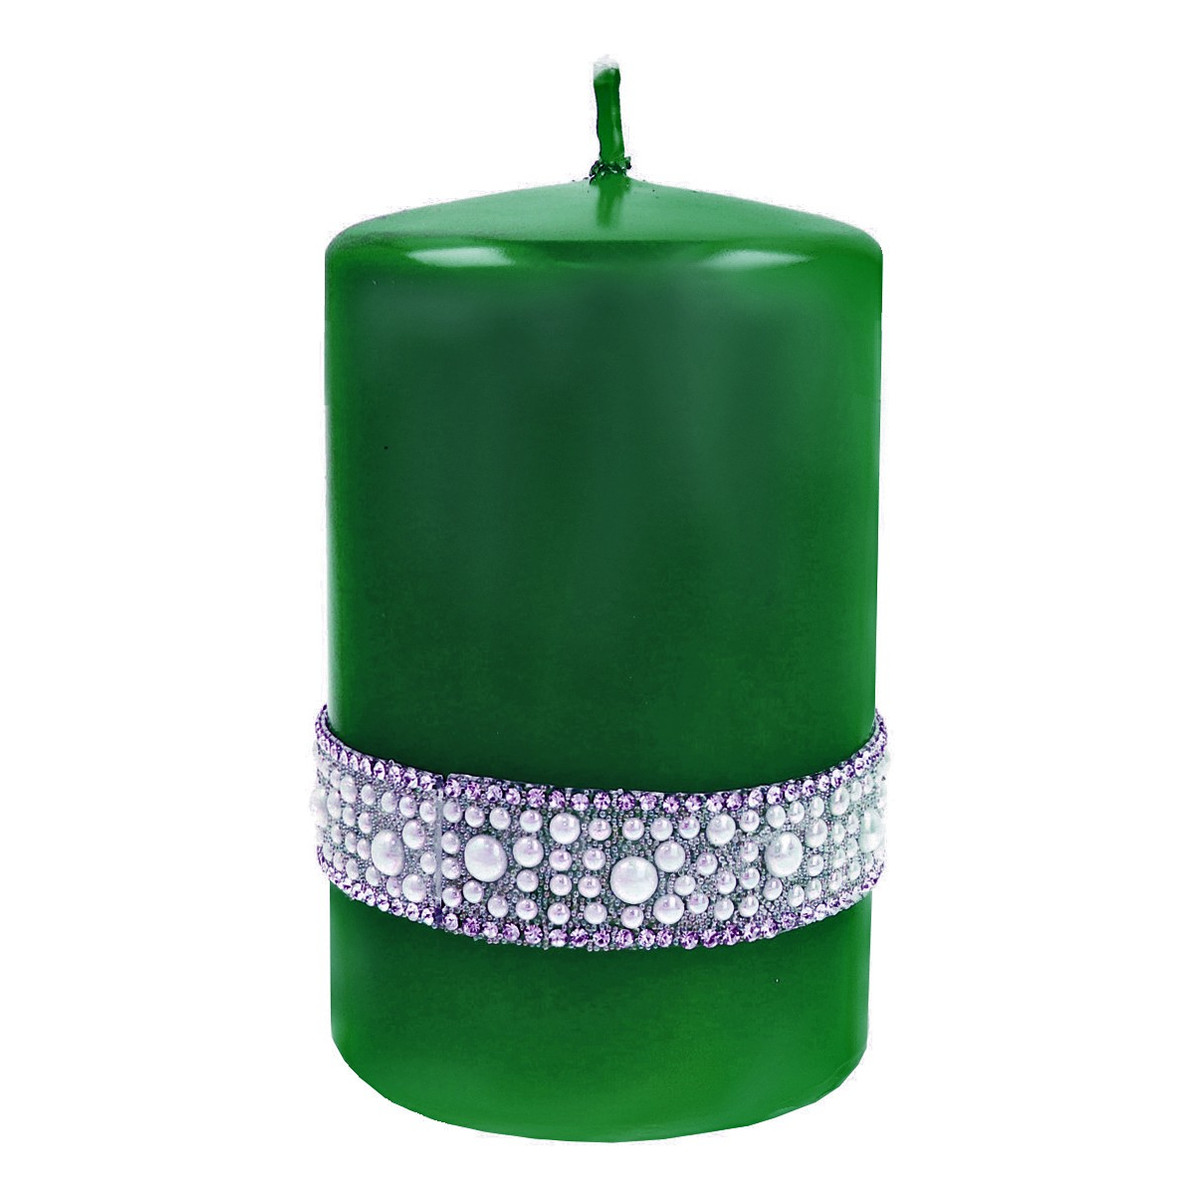 Artman Candles Świeca ozdobna Crystal Opal Pearl zielona - walec mały